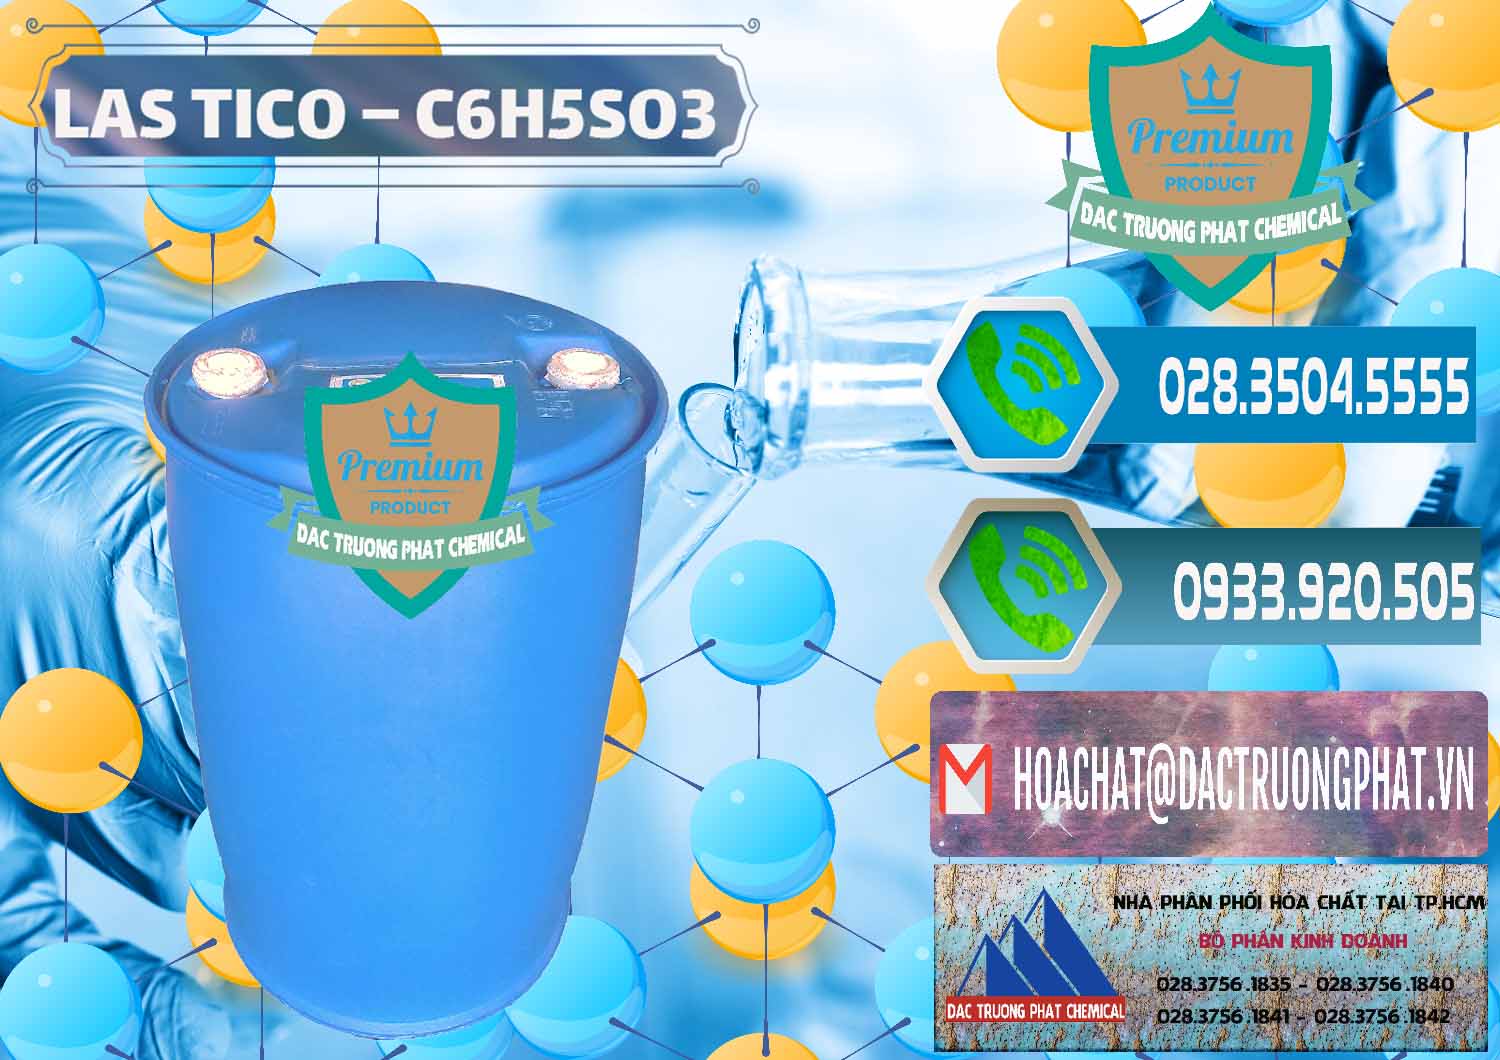 Chuyên cung cấp - bán Chất tạo bọt Las H Tico Việt Nam - 0190 - Công ty chuyên kinh doanh & phân phối hóa chất tại TP.HCM - congtyhoachat.net